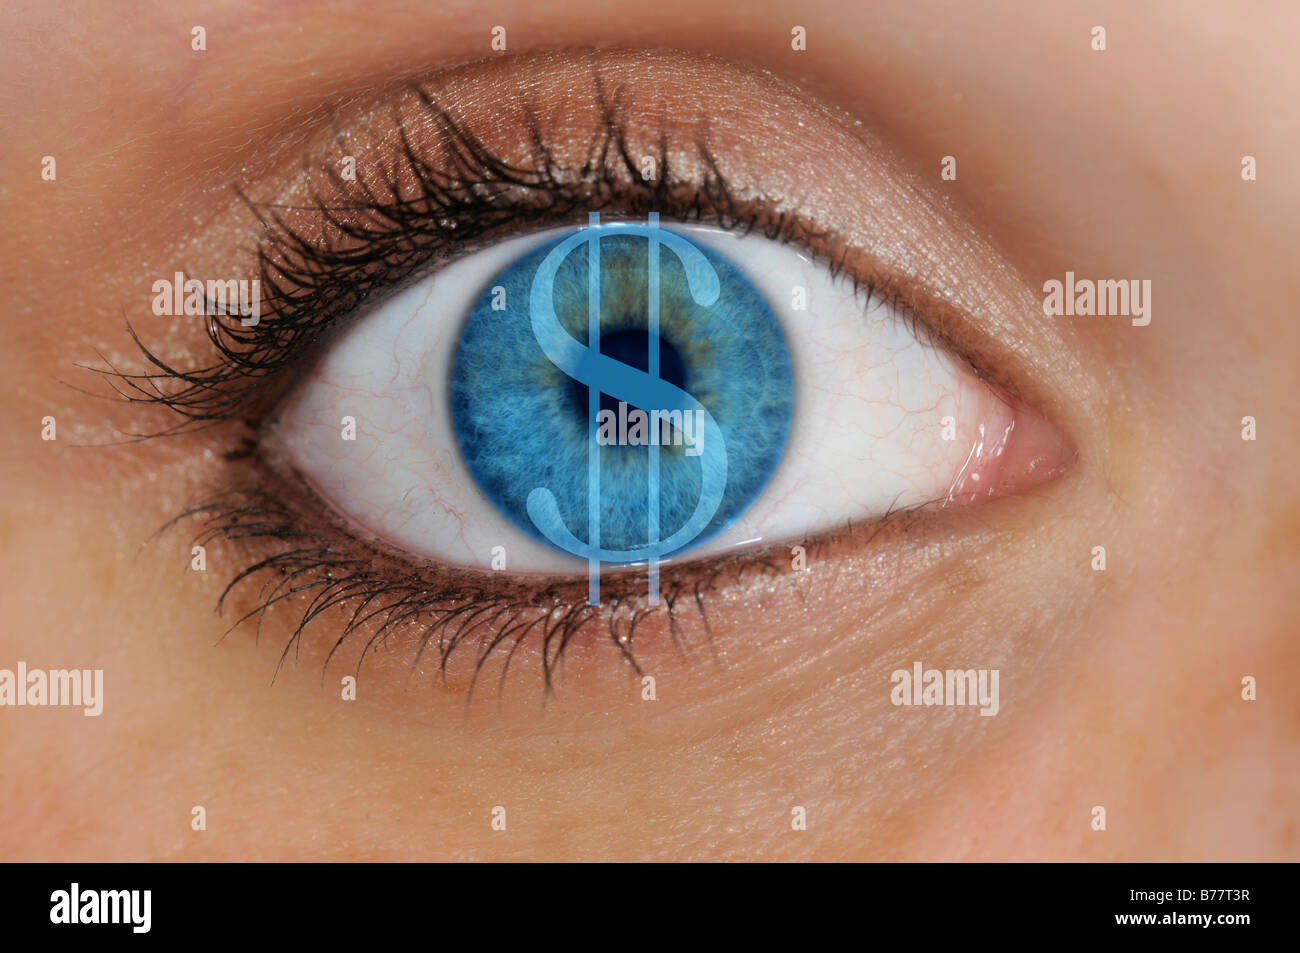 Oeil avec un symbole dollar superposé sur un iris bleu, détail, symbolique de l'avarice Banque D'Images